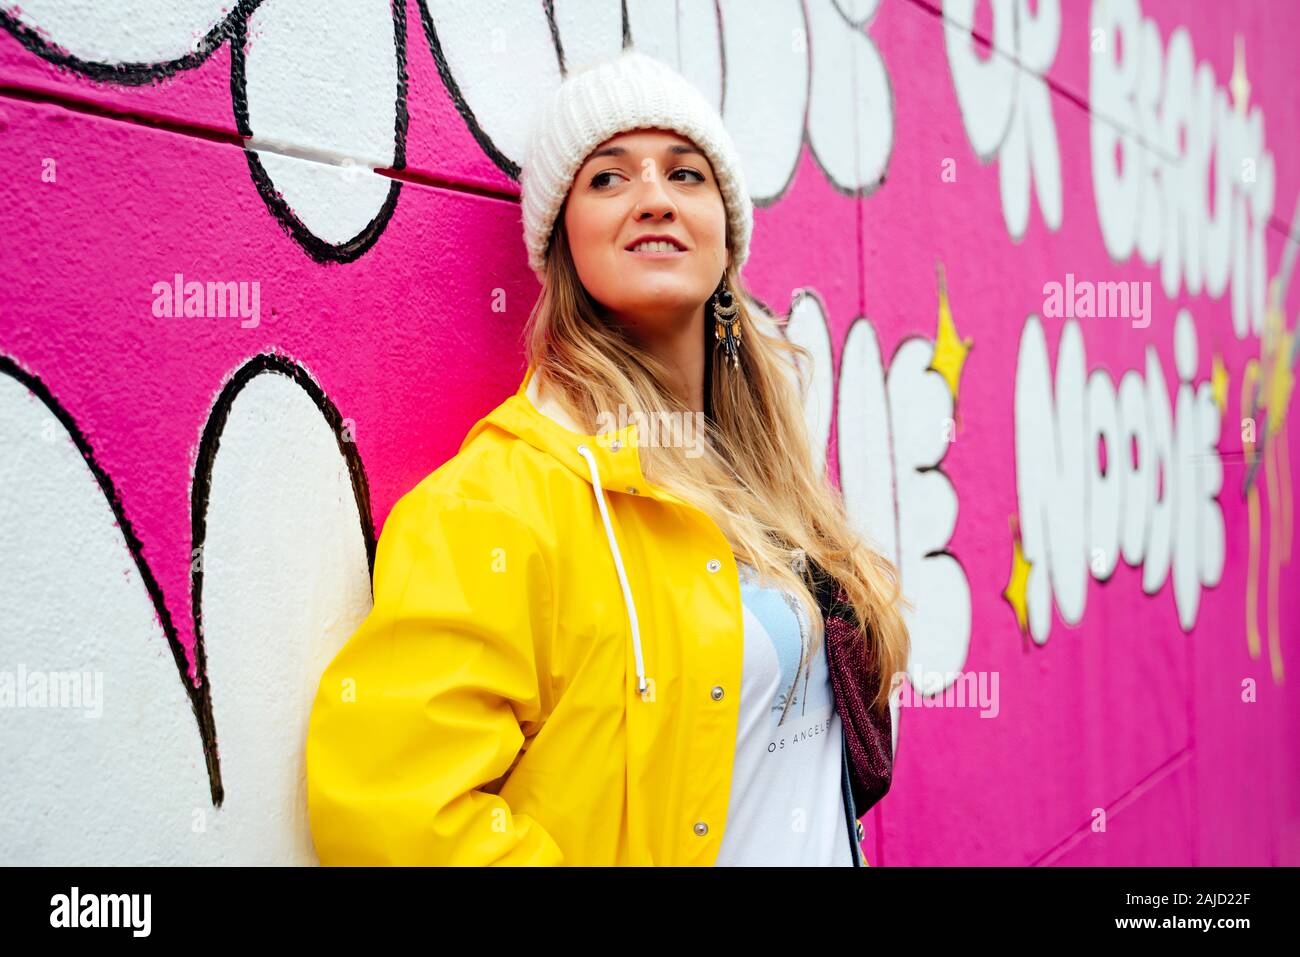 Attraktive blonde Frau auf einem rosa Wand posieren Stockfoto